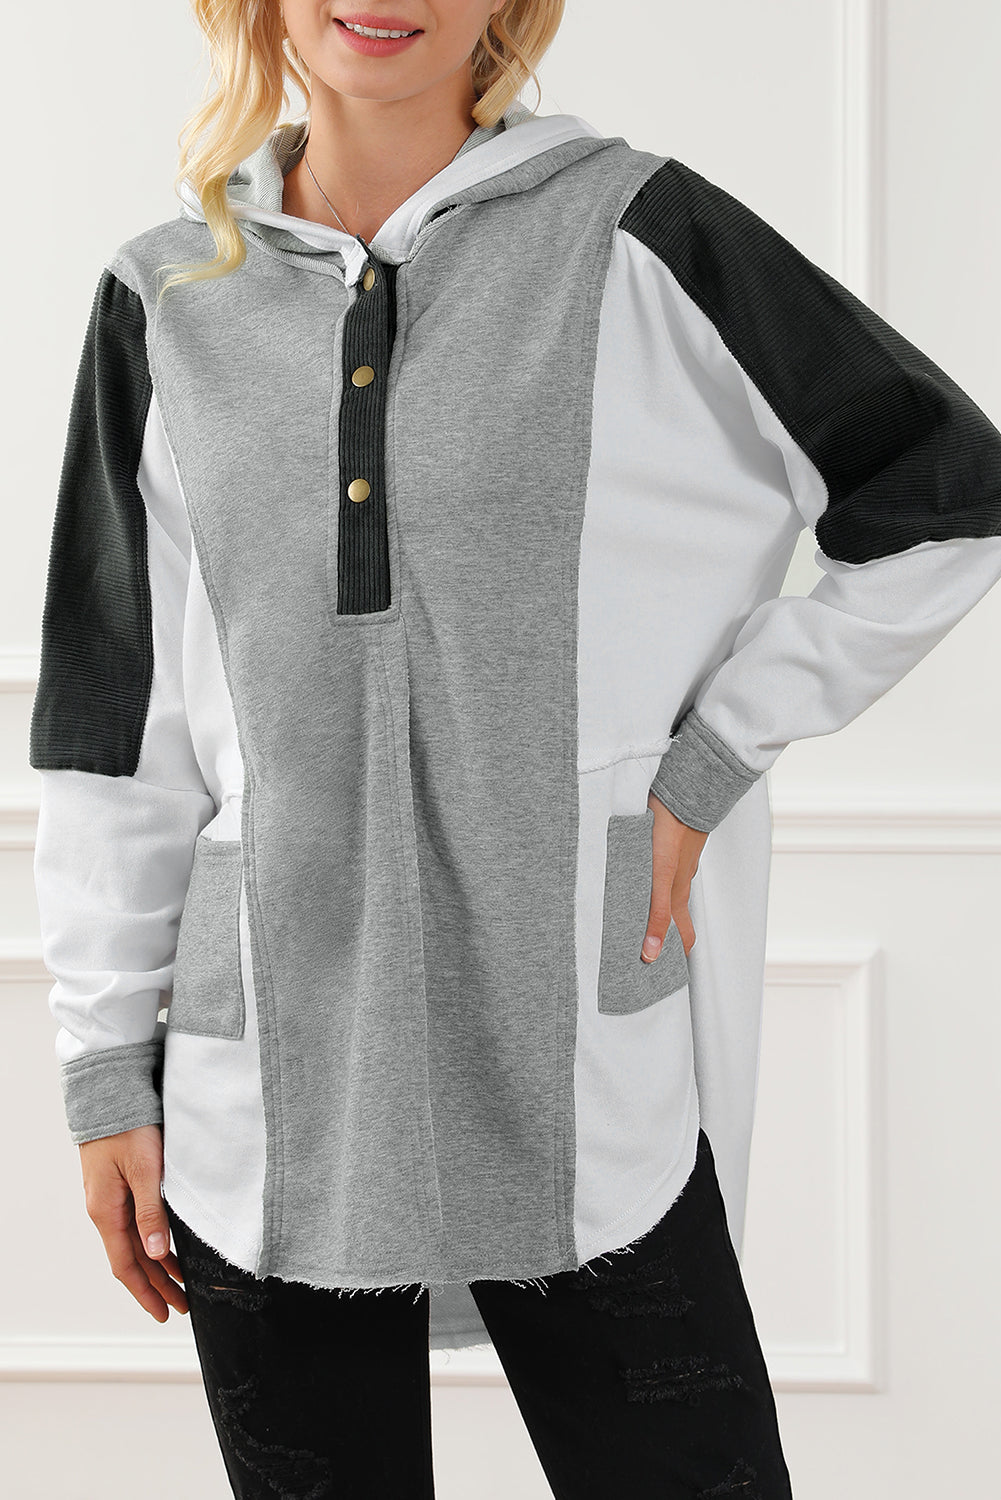 Pulover s kapuco z izpostavljenimi šivi in ​​gumbi v črni barvi